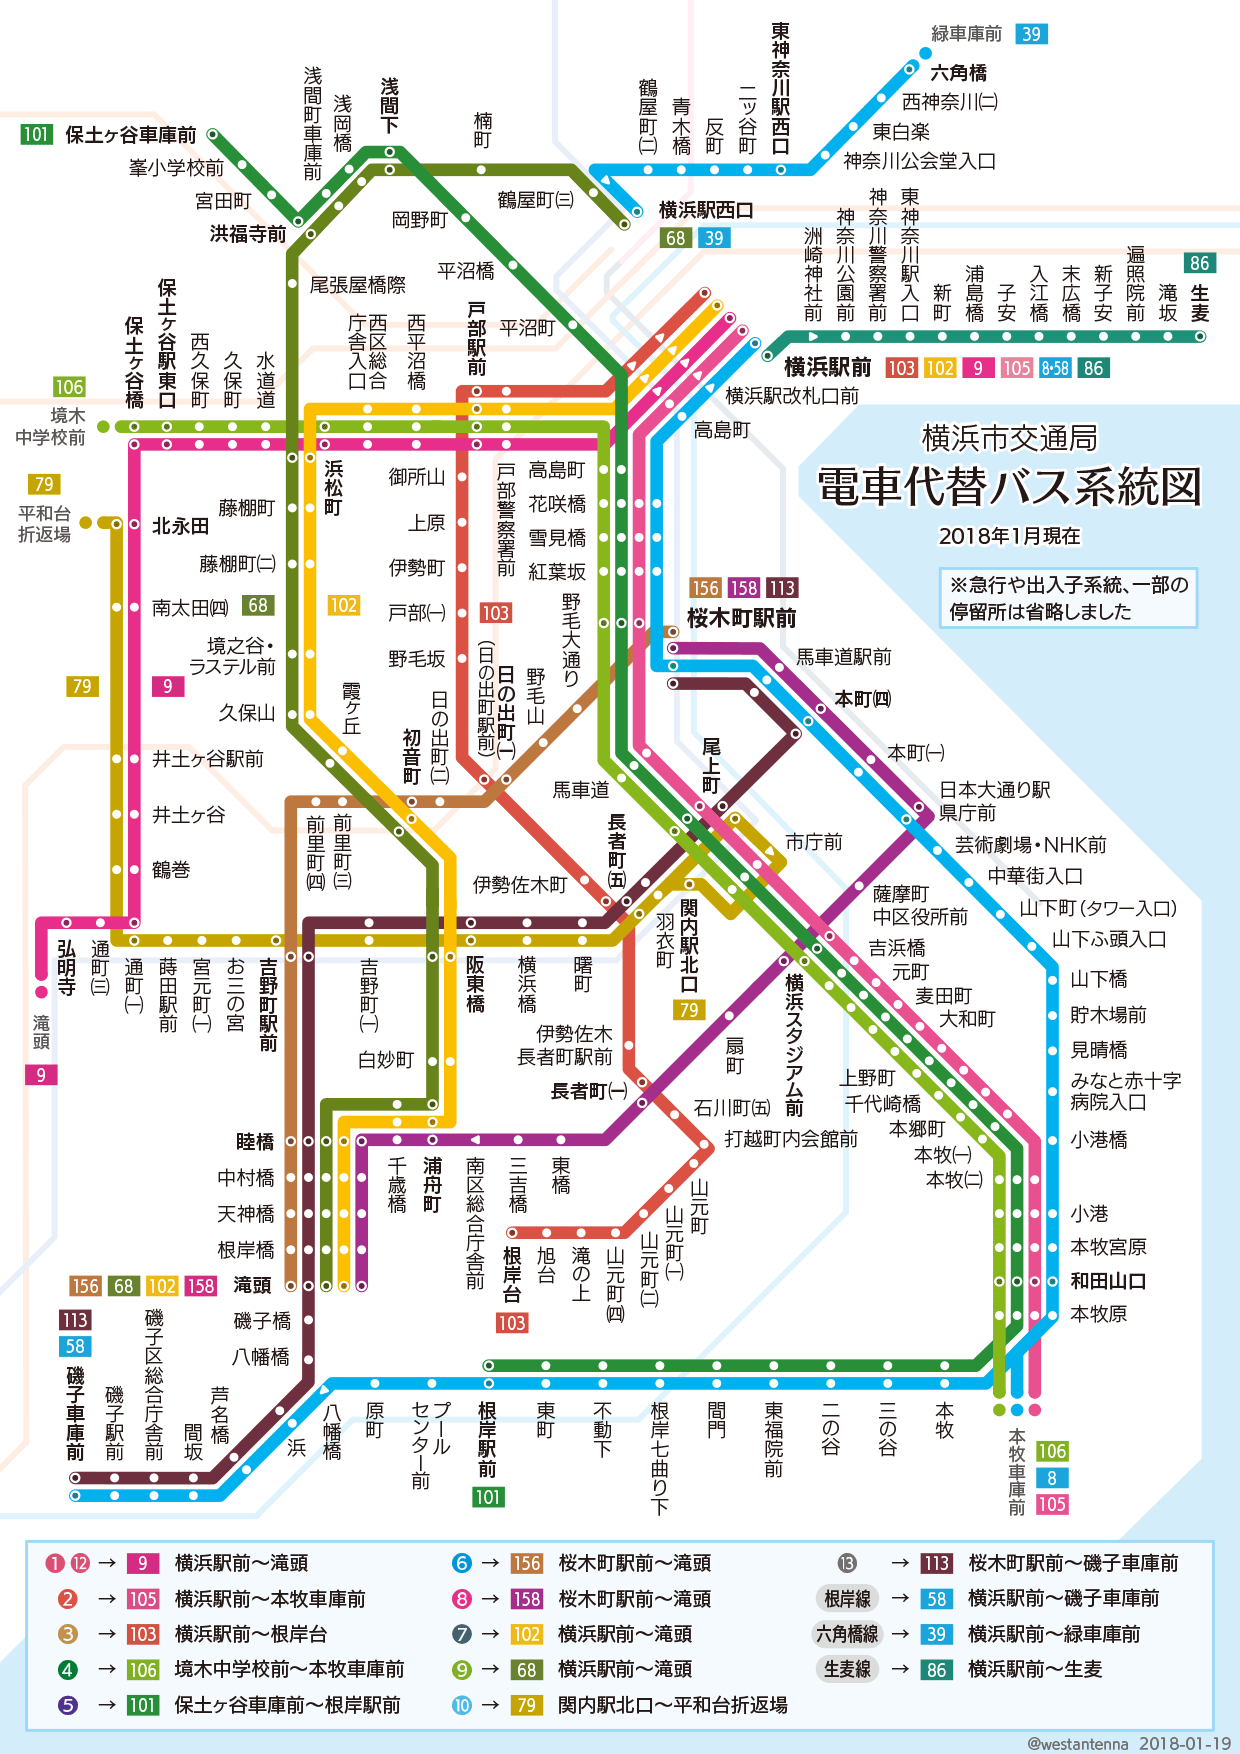 バス 路線図 横浜 - HTFYL